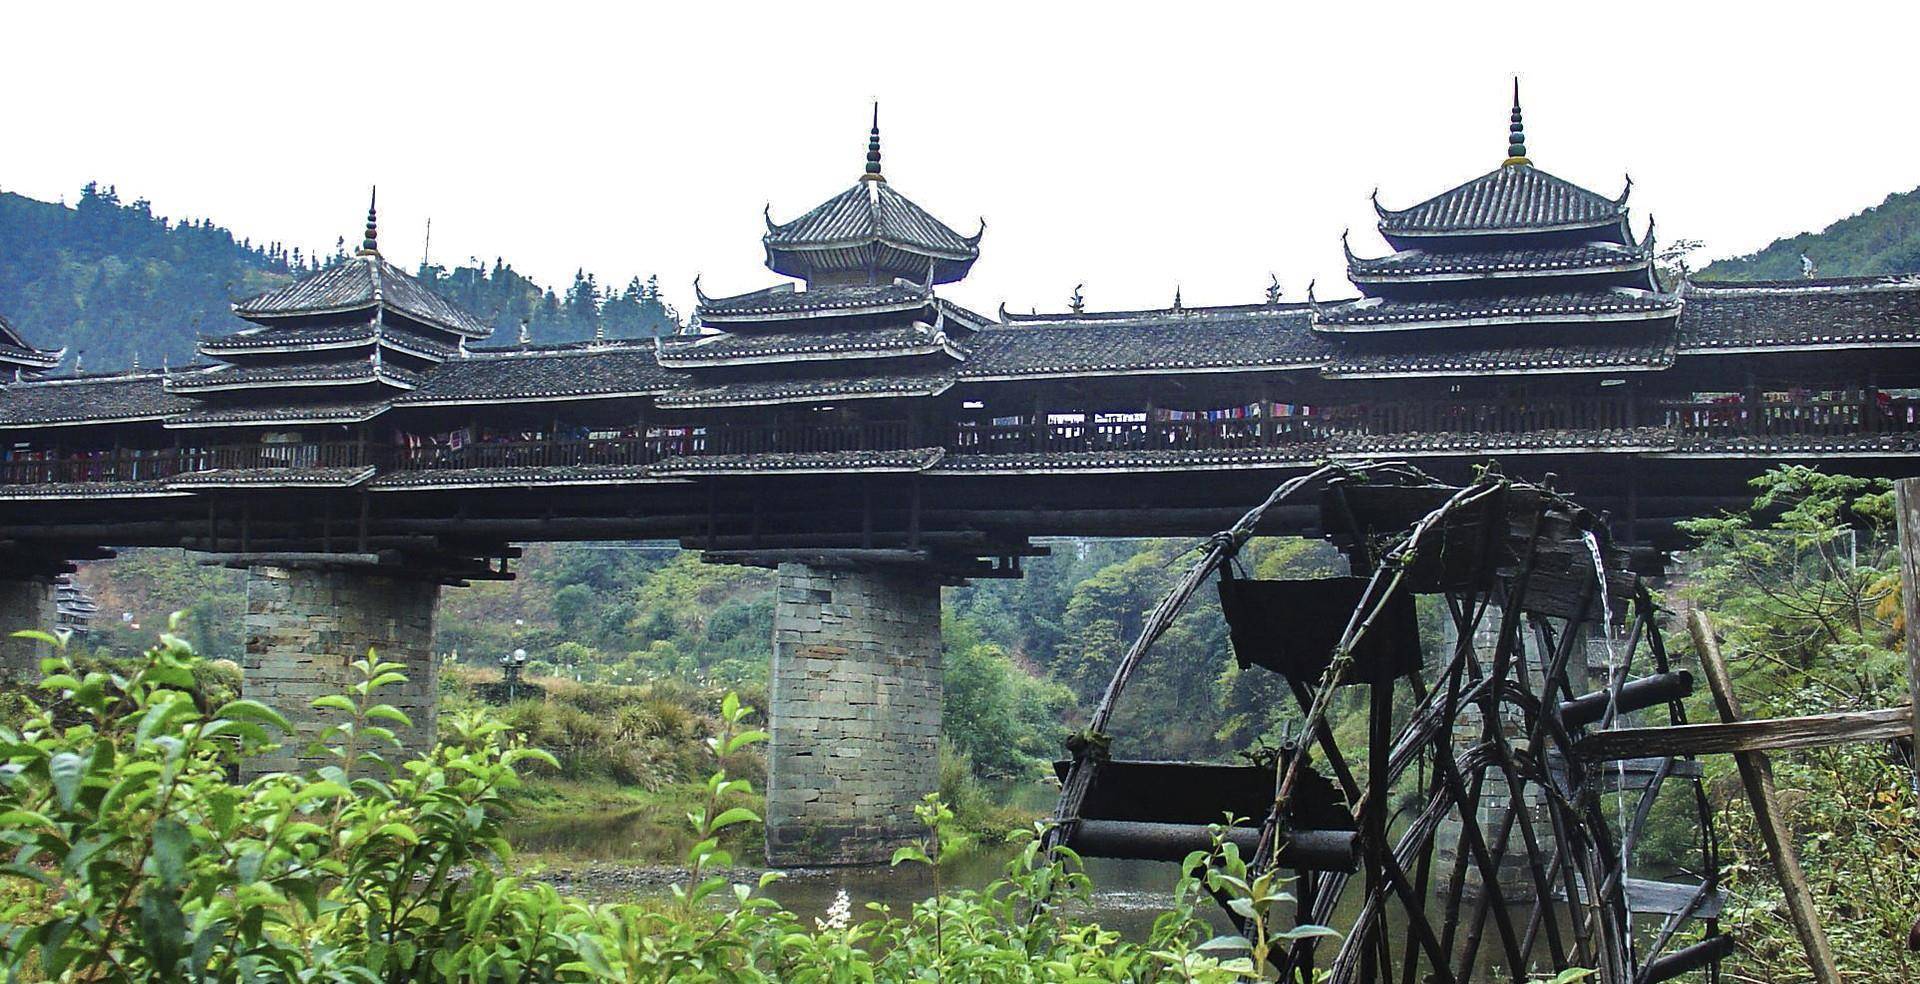 广西之旅:在风雨桥上和程阳八寨闲逛,感受侗族文化的独特魅力